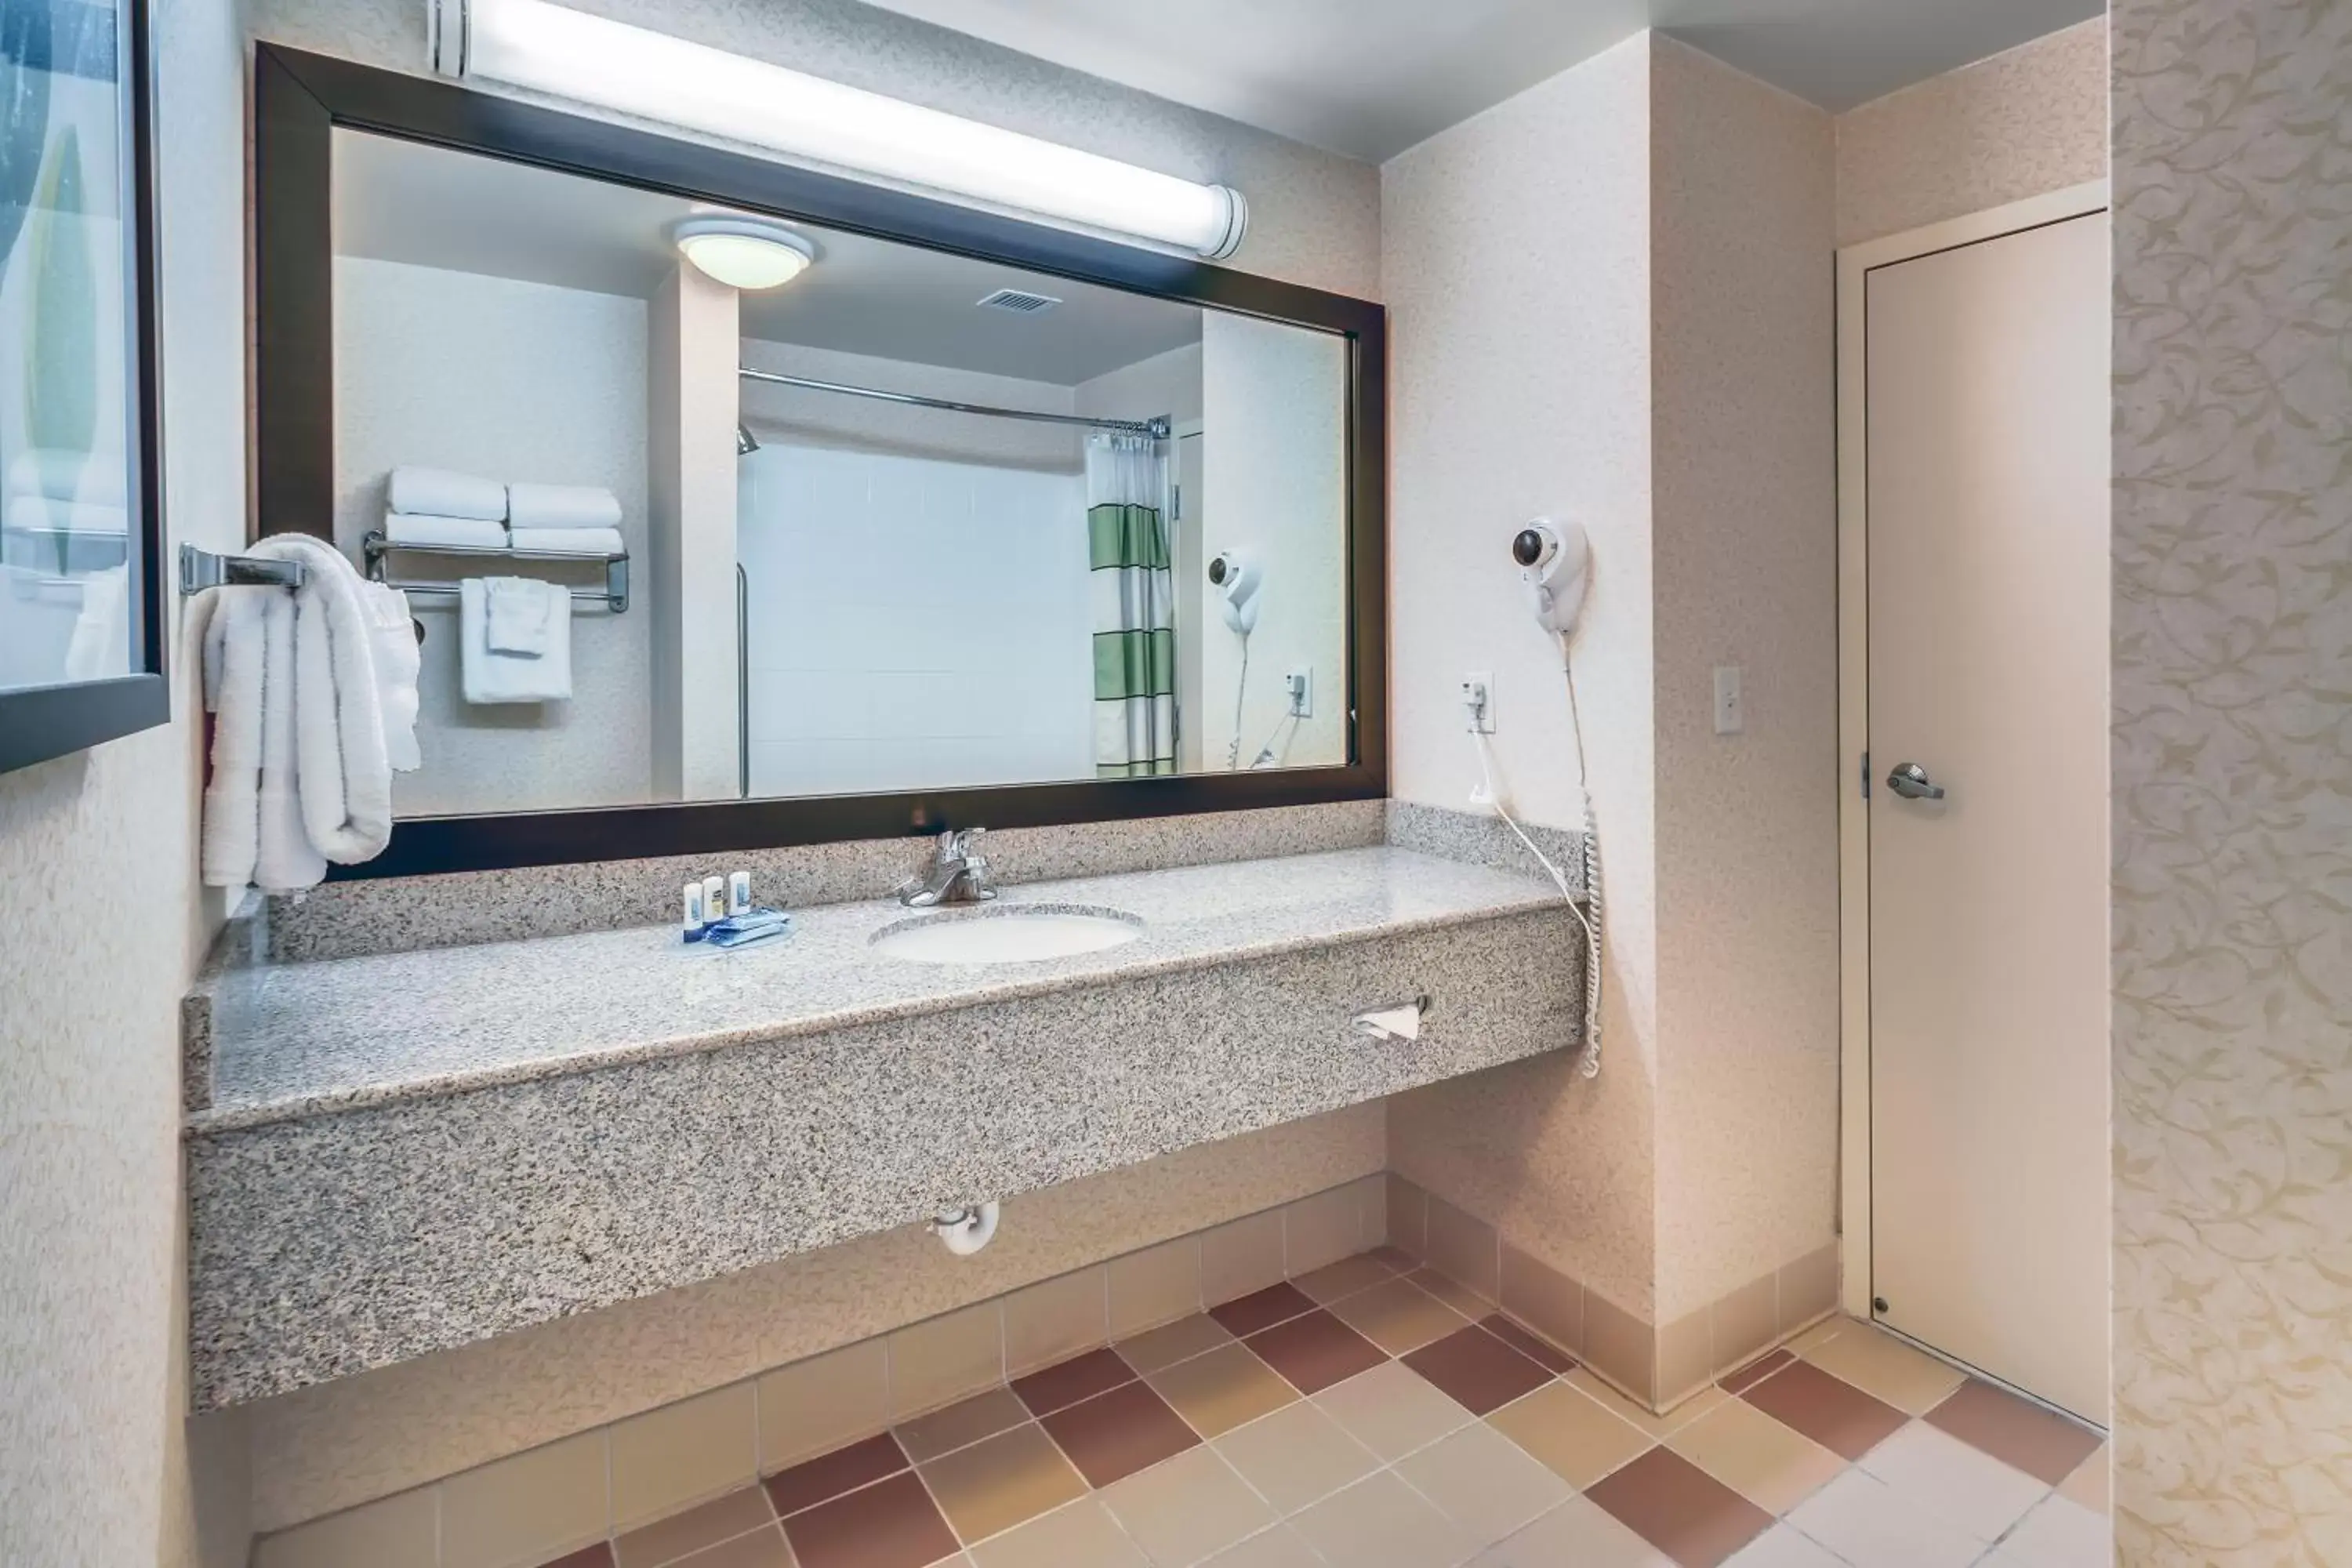 Bathroom in Fairfield Inn and Suites Jacksonville Beach